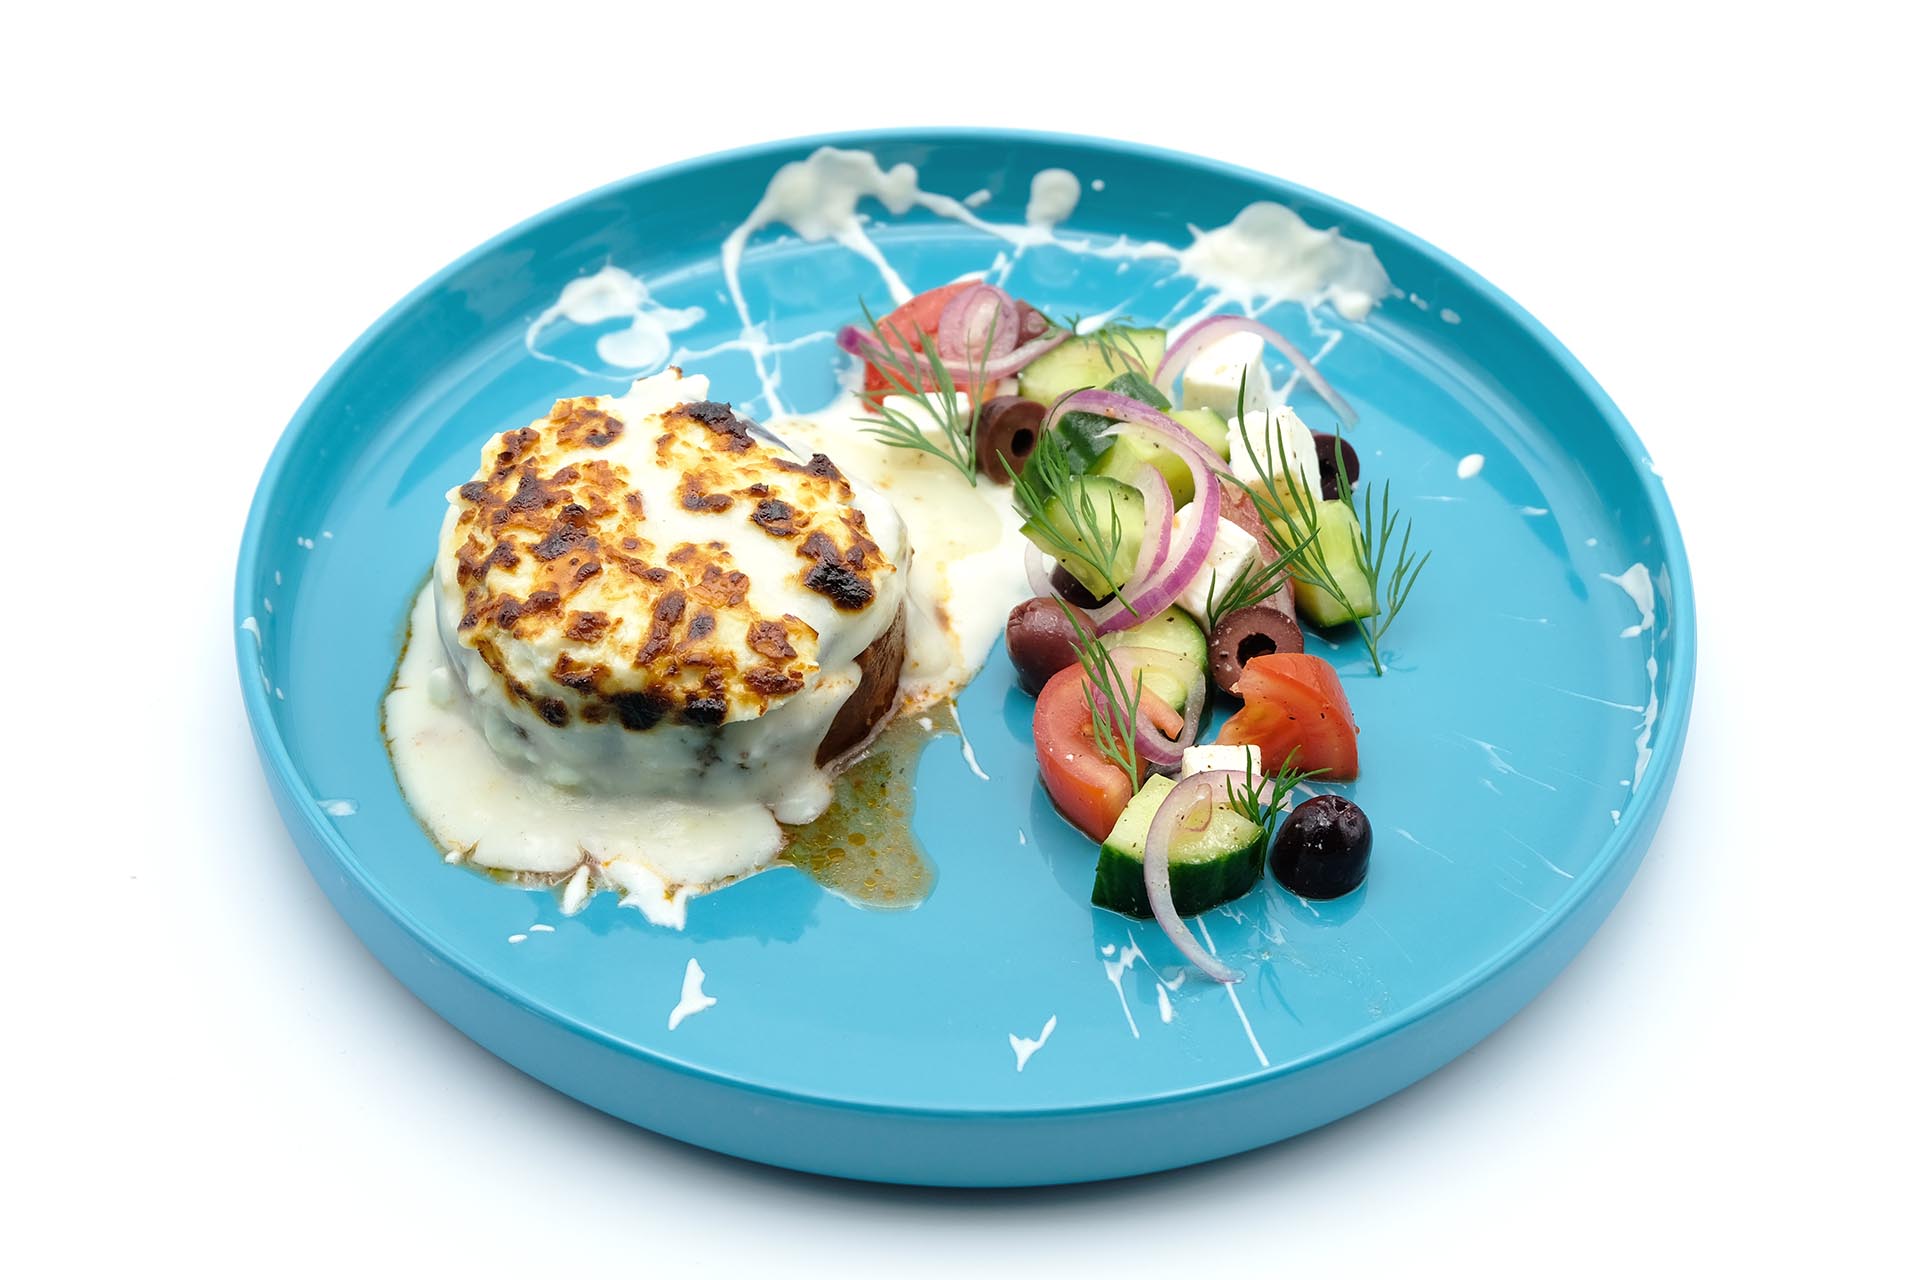 Rezept für Moussaka und griechischer Salat Popdish Foodblog, Gerichte, die knallen,